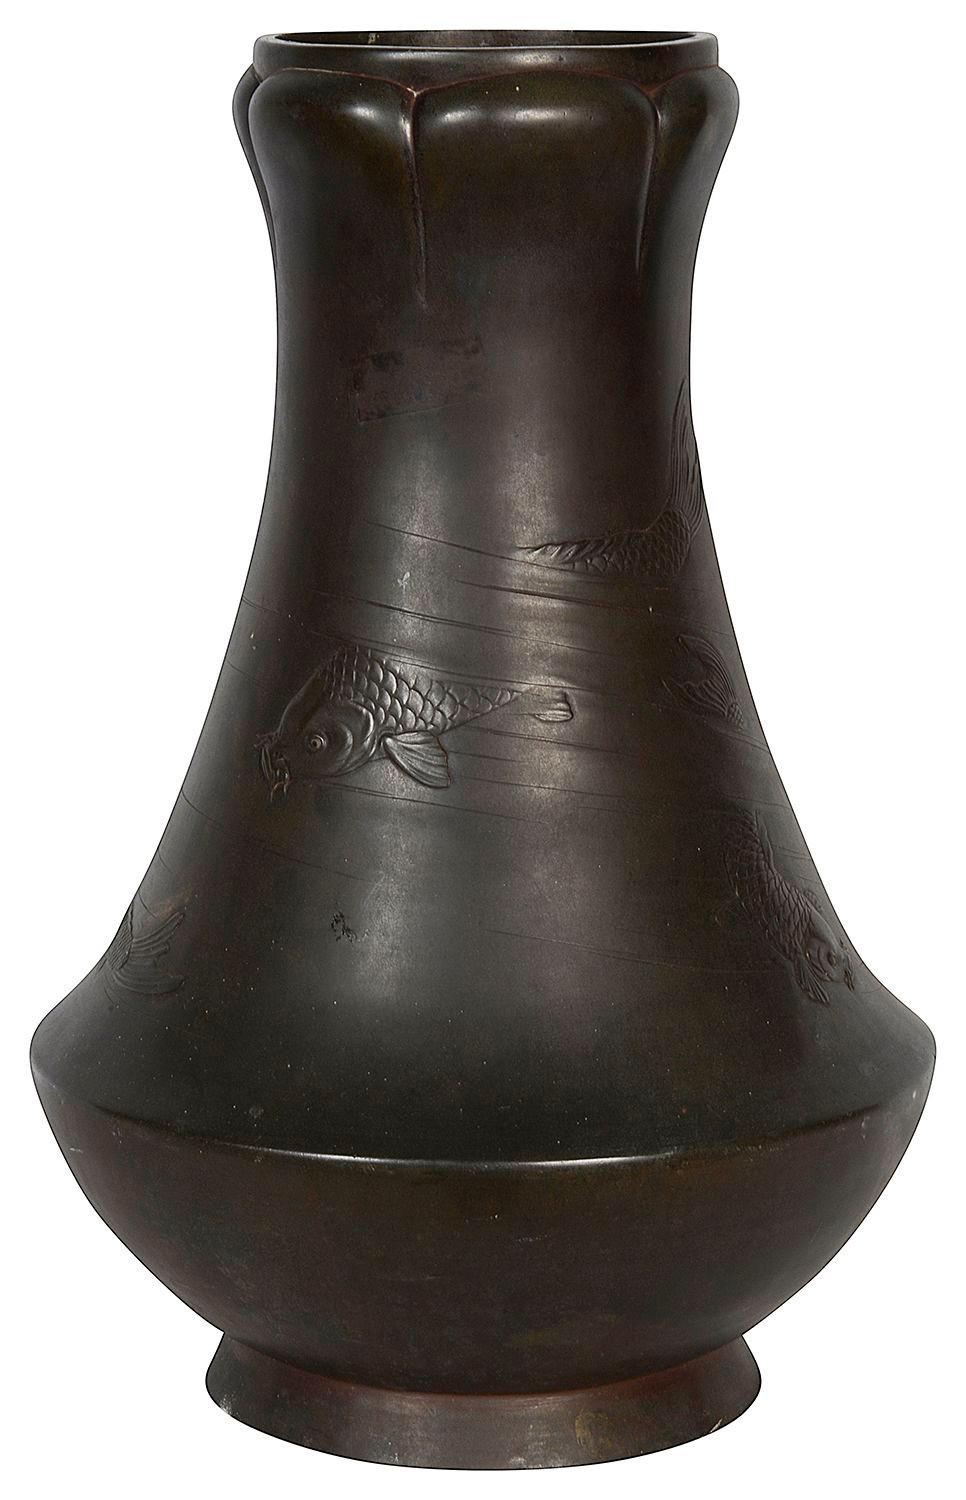 Vase en bronze patiné d'époque Meiji (1868-1912) représentant des carpes en train de nager, très impressionnant et enchanteur.

57380 ACYN